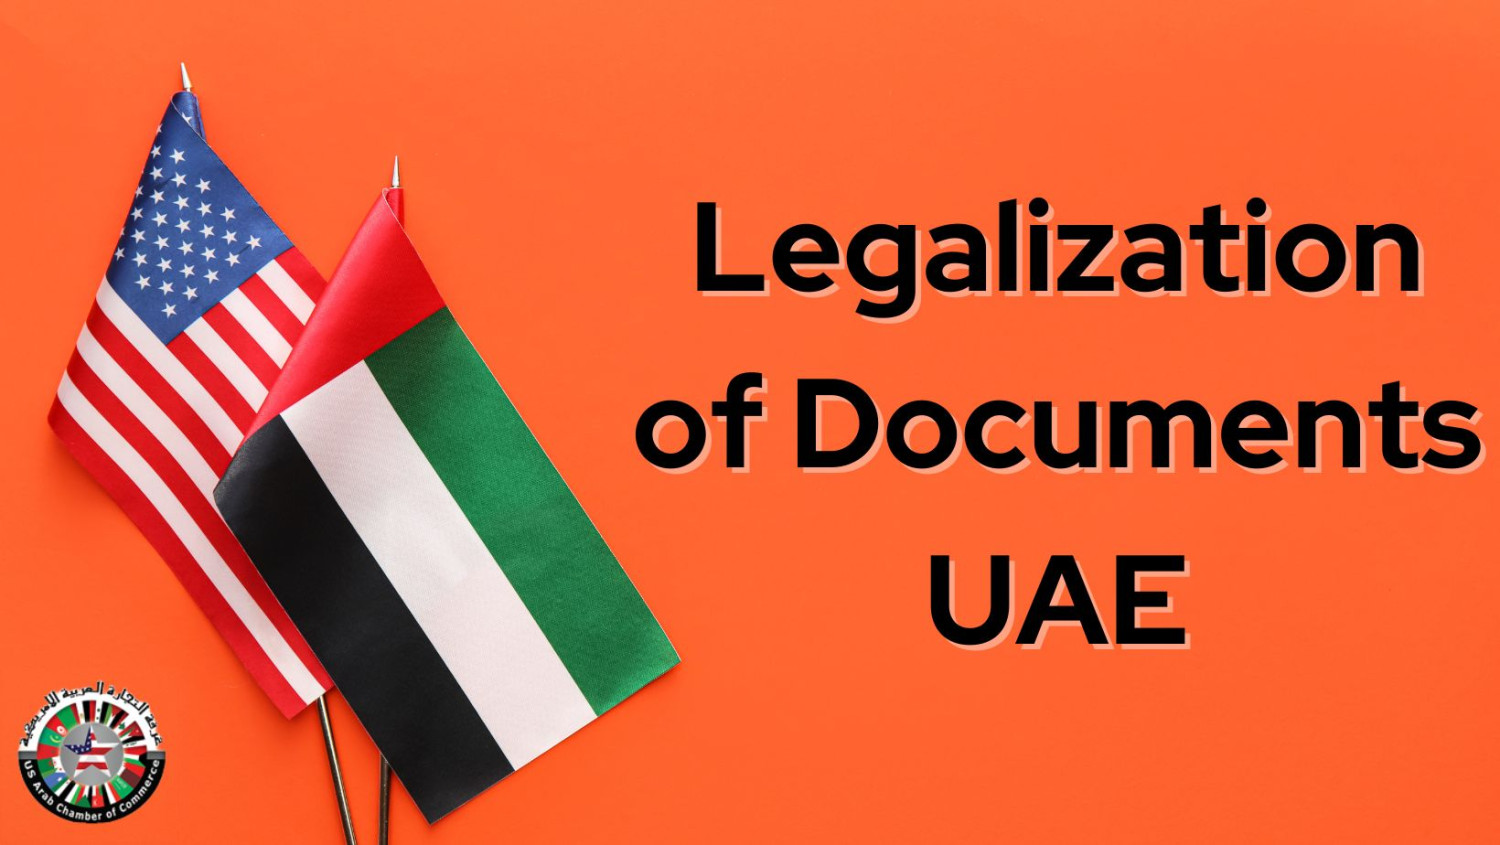 legalization of documents UAE